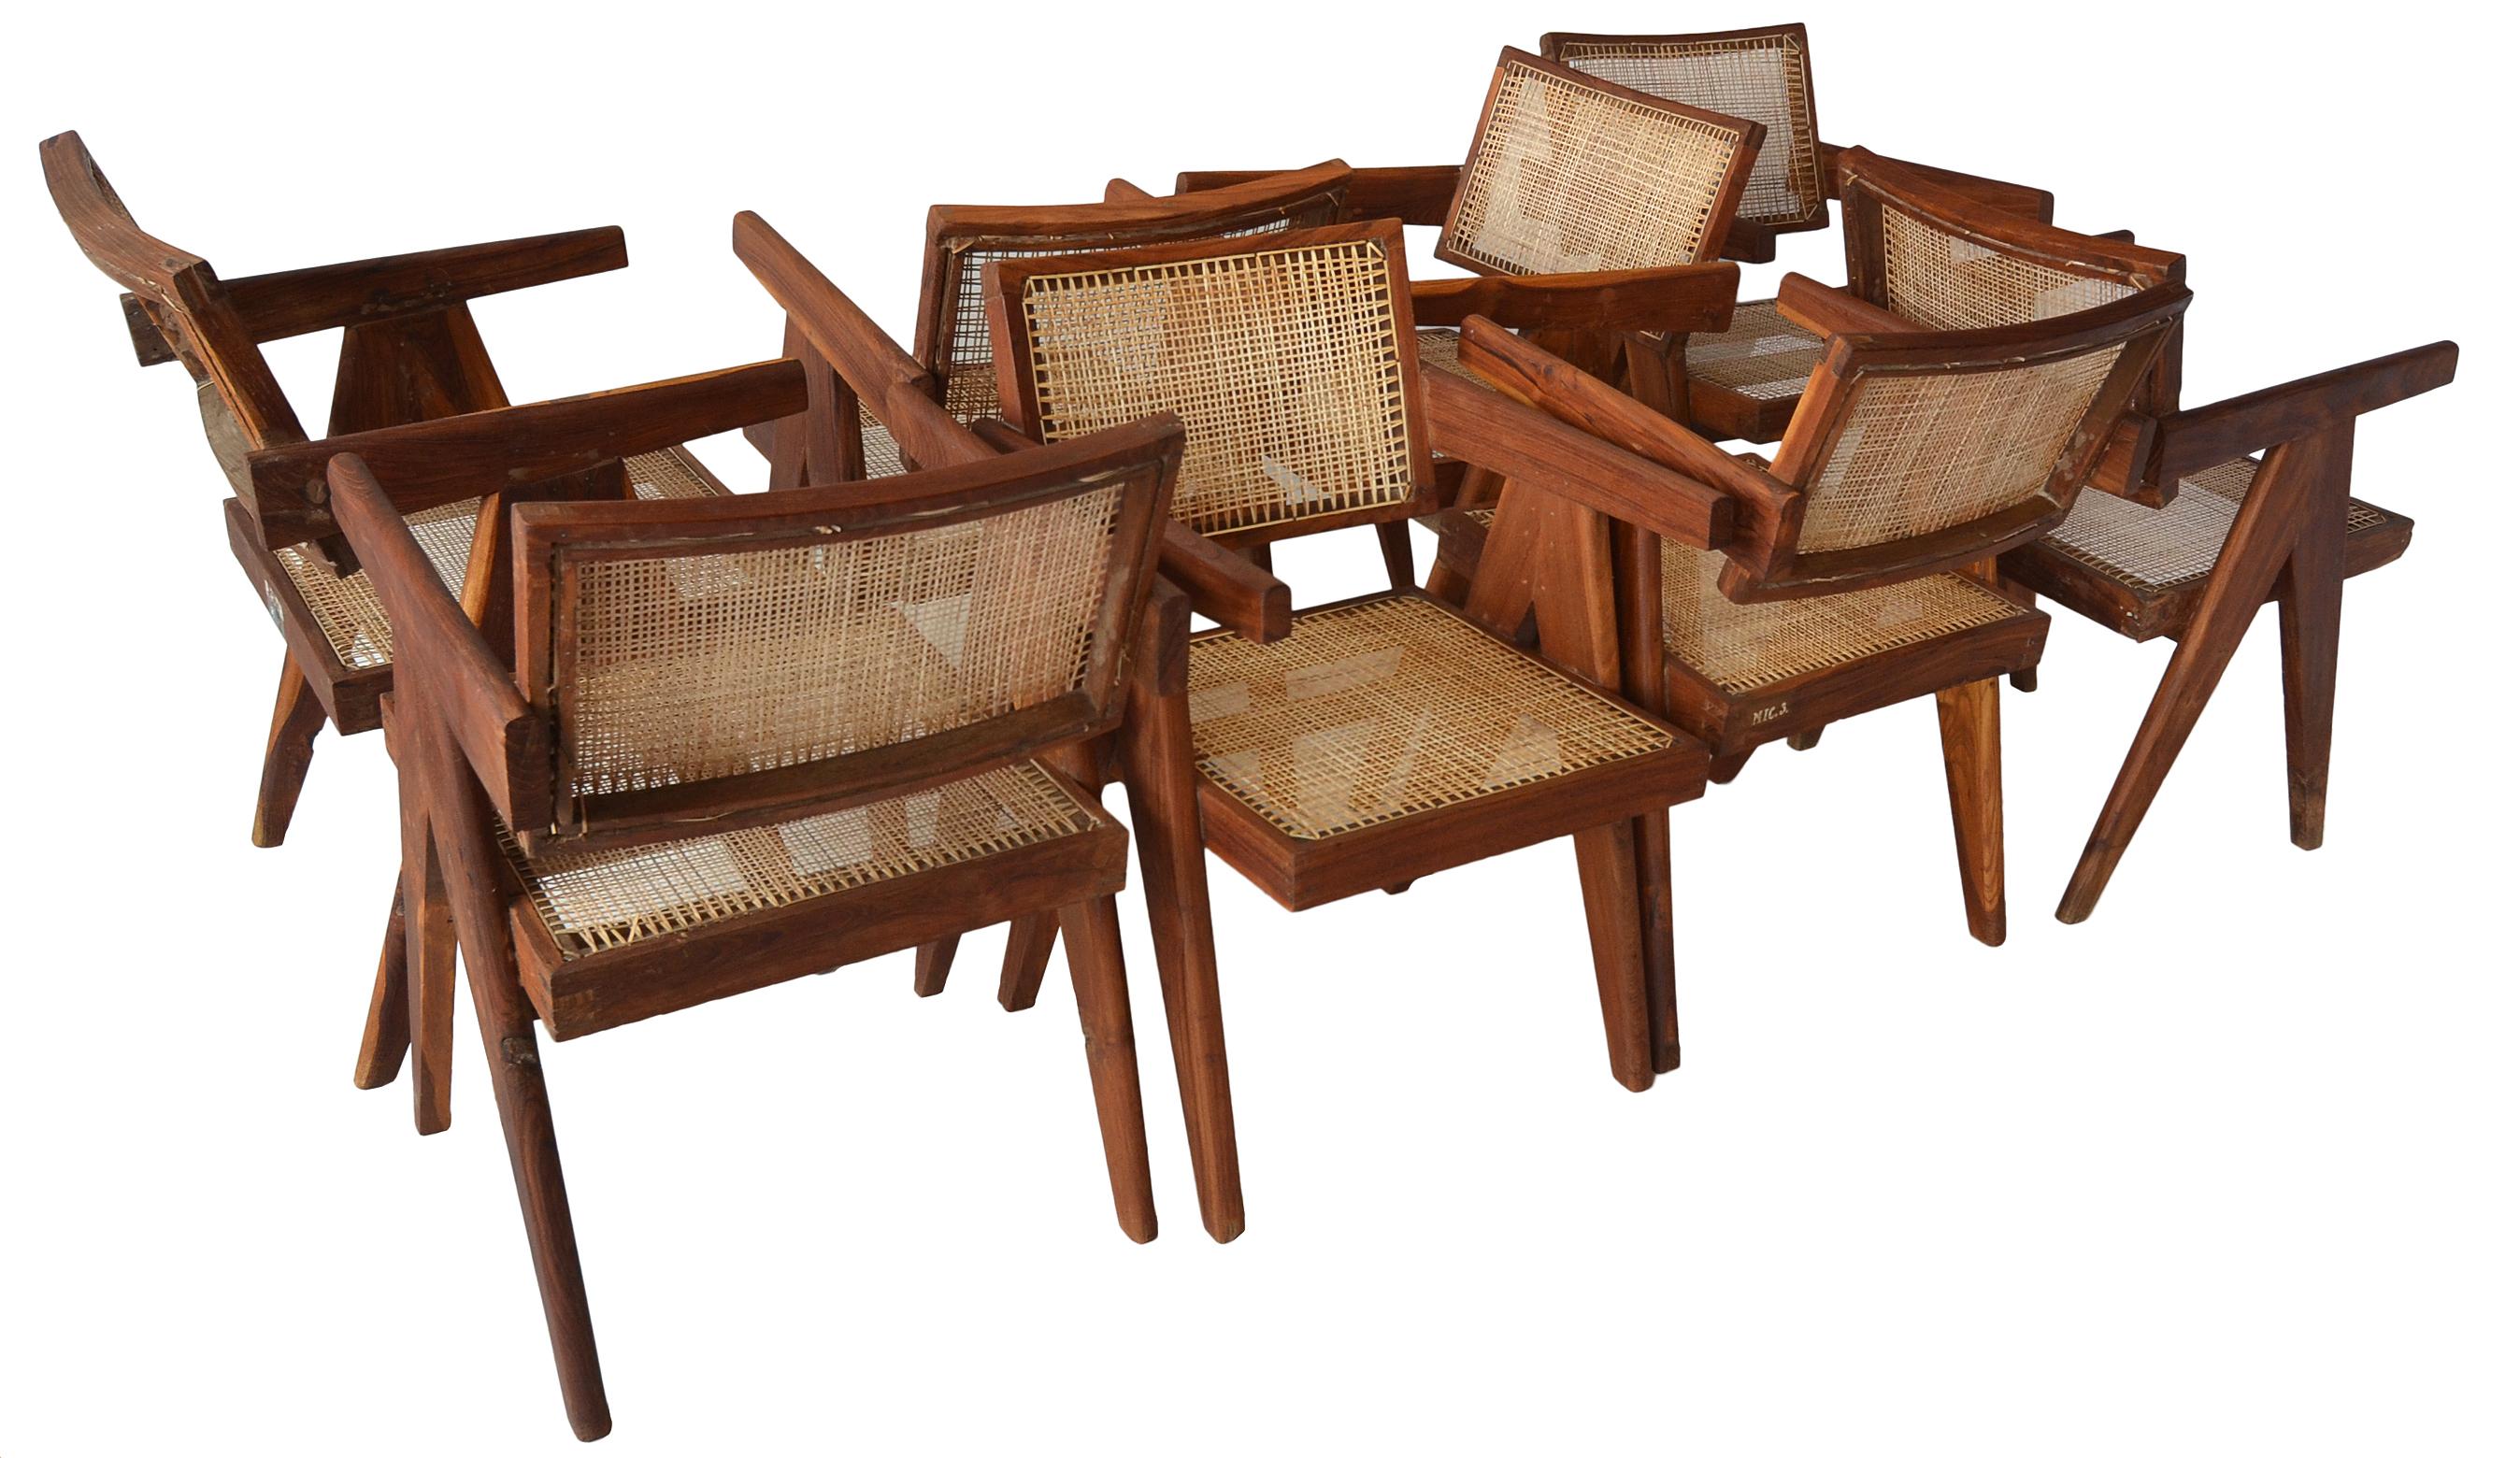 Un superbe ensemble assorti de 8 fauteuils à dossier flottant de Pierre Jeanneret pour le projet Chandigarh.

Ces exemples sont plutôt désirables car ils sont exécutés en palissandre indien ou en bois de Sissoo. 

Nombre d'entre elles présentent